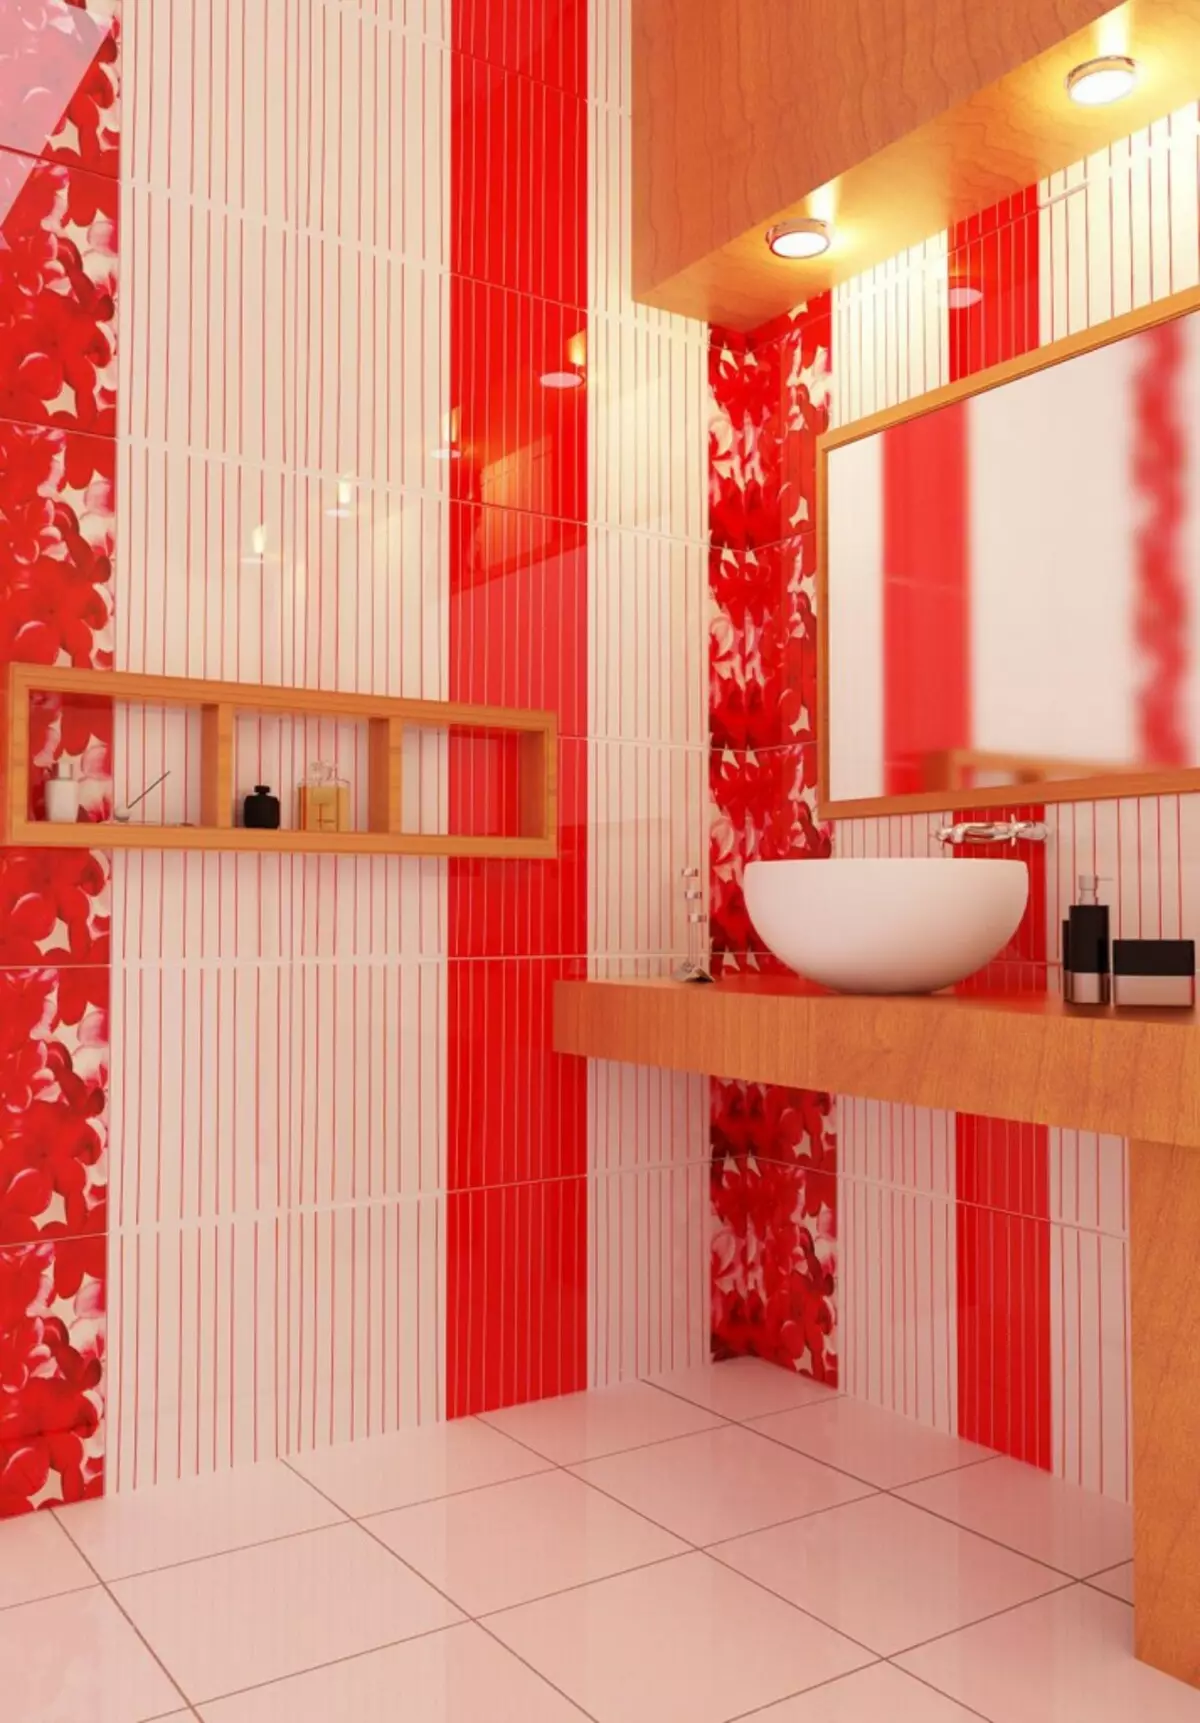 Красная плитка в ванной plitka vanny ru. Красная плитка для ванной. Красная ванная. Керамическая плитка для ванной комнаты. Панели для ванной.